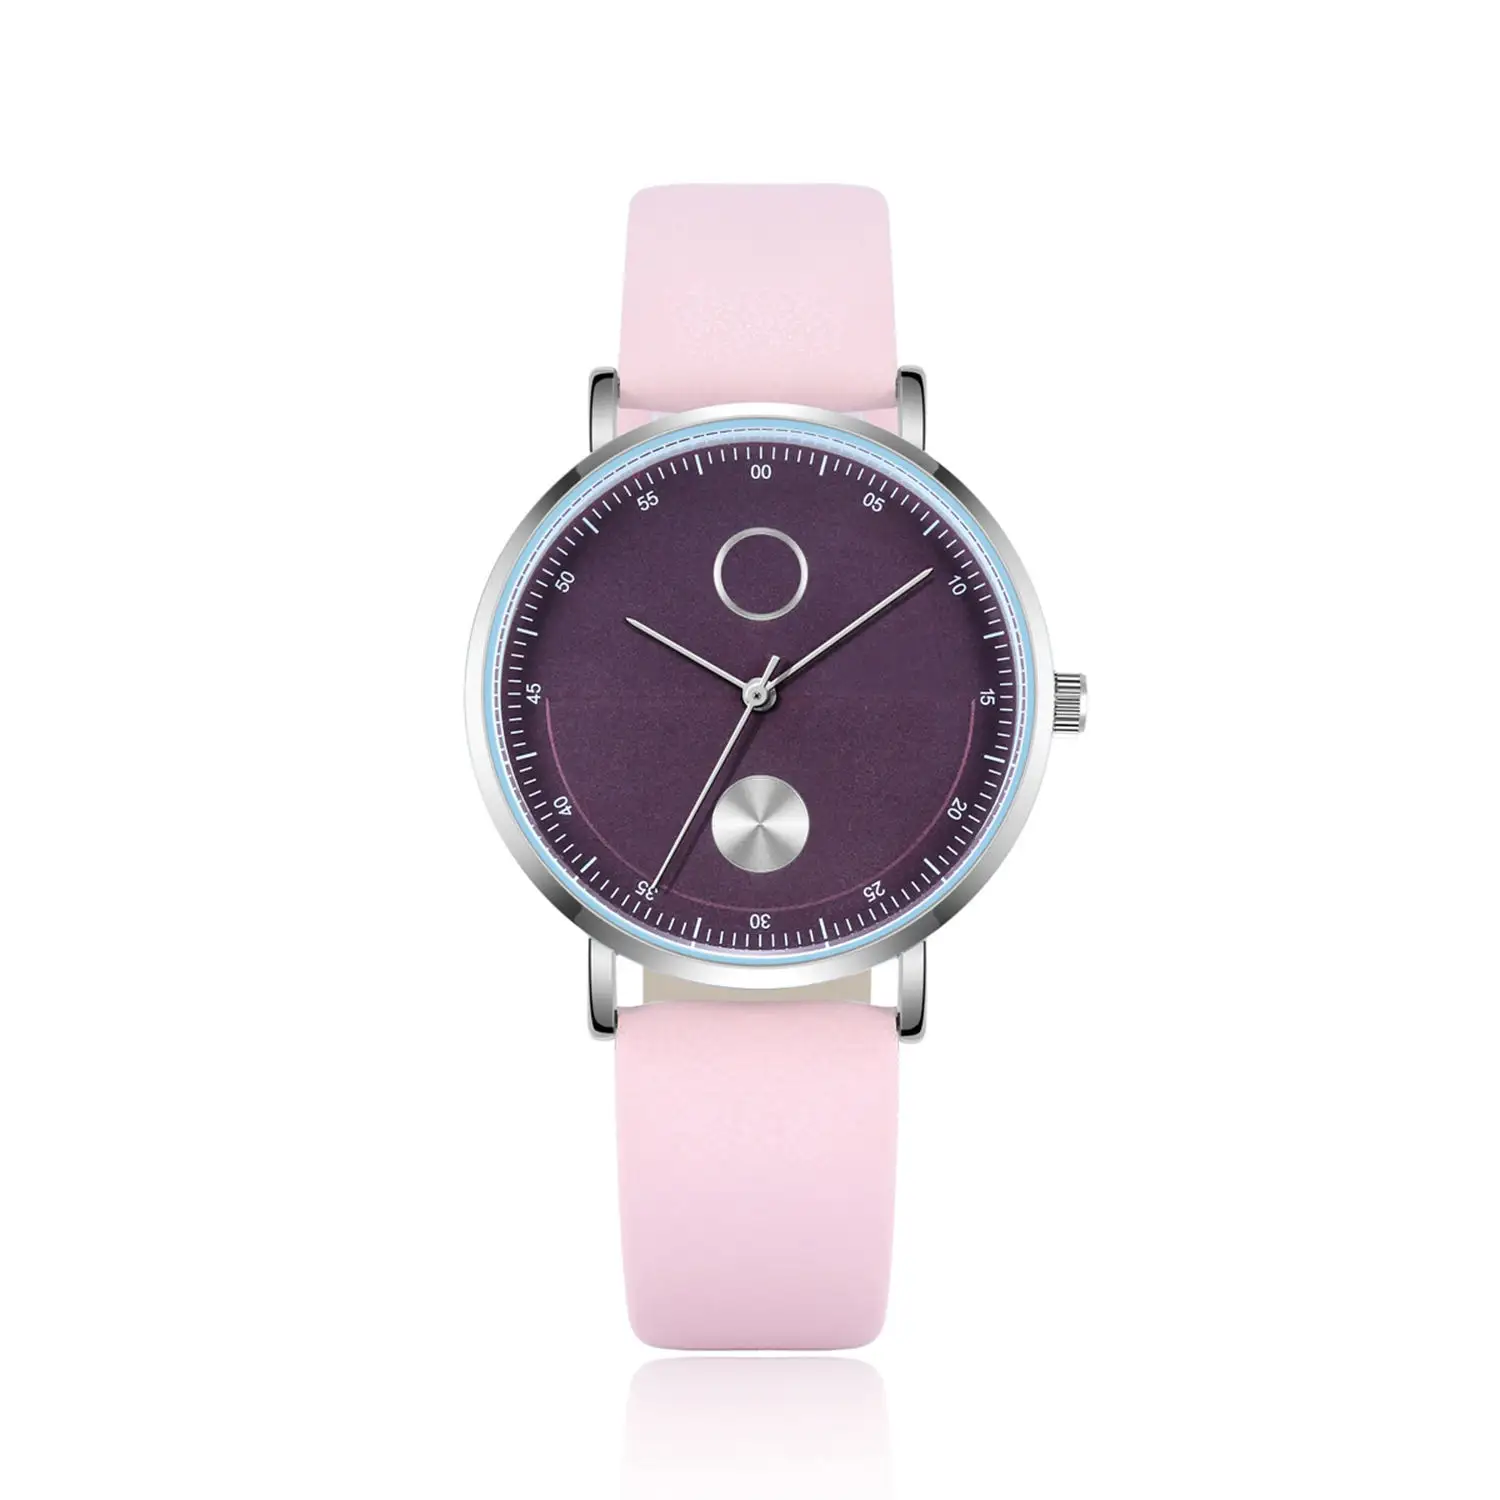 Jam tangan wanita Quartz Jepang Movt Excel punggung baja tahan karat jam tangan olahraga Logo kustom 3ATM kedap air harga murah